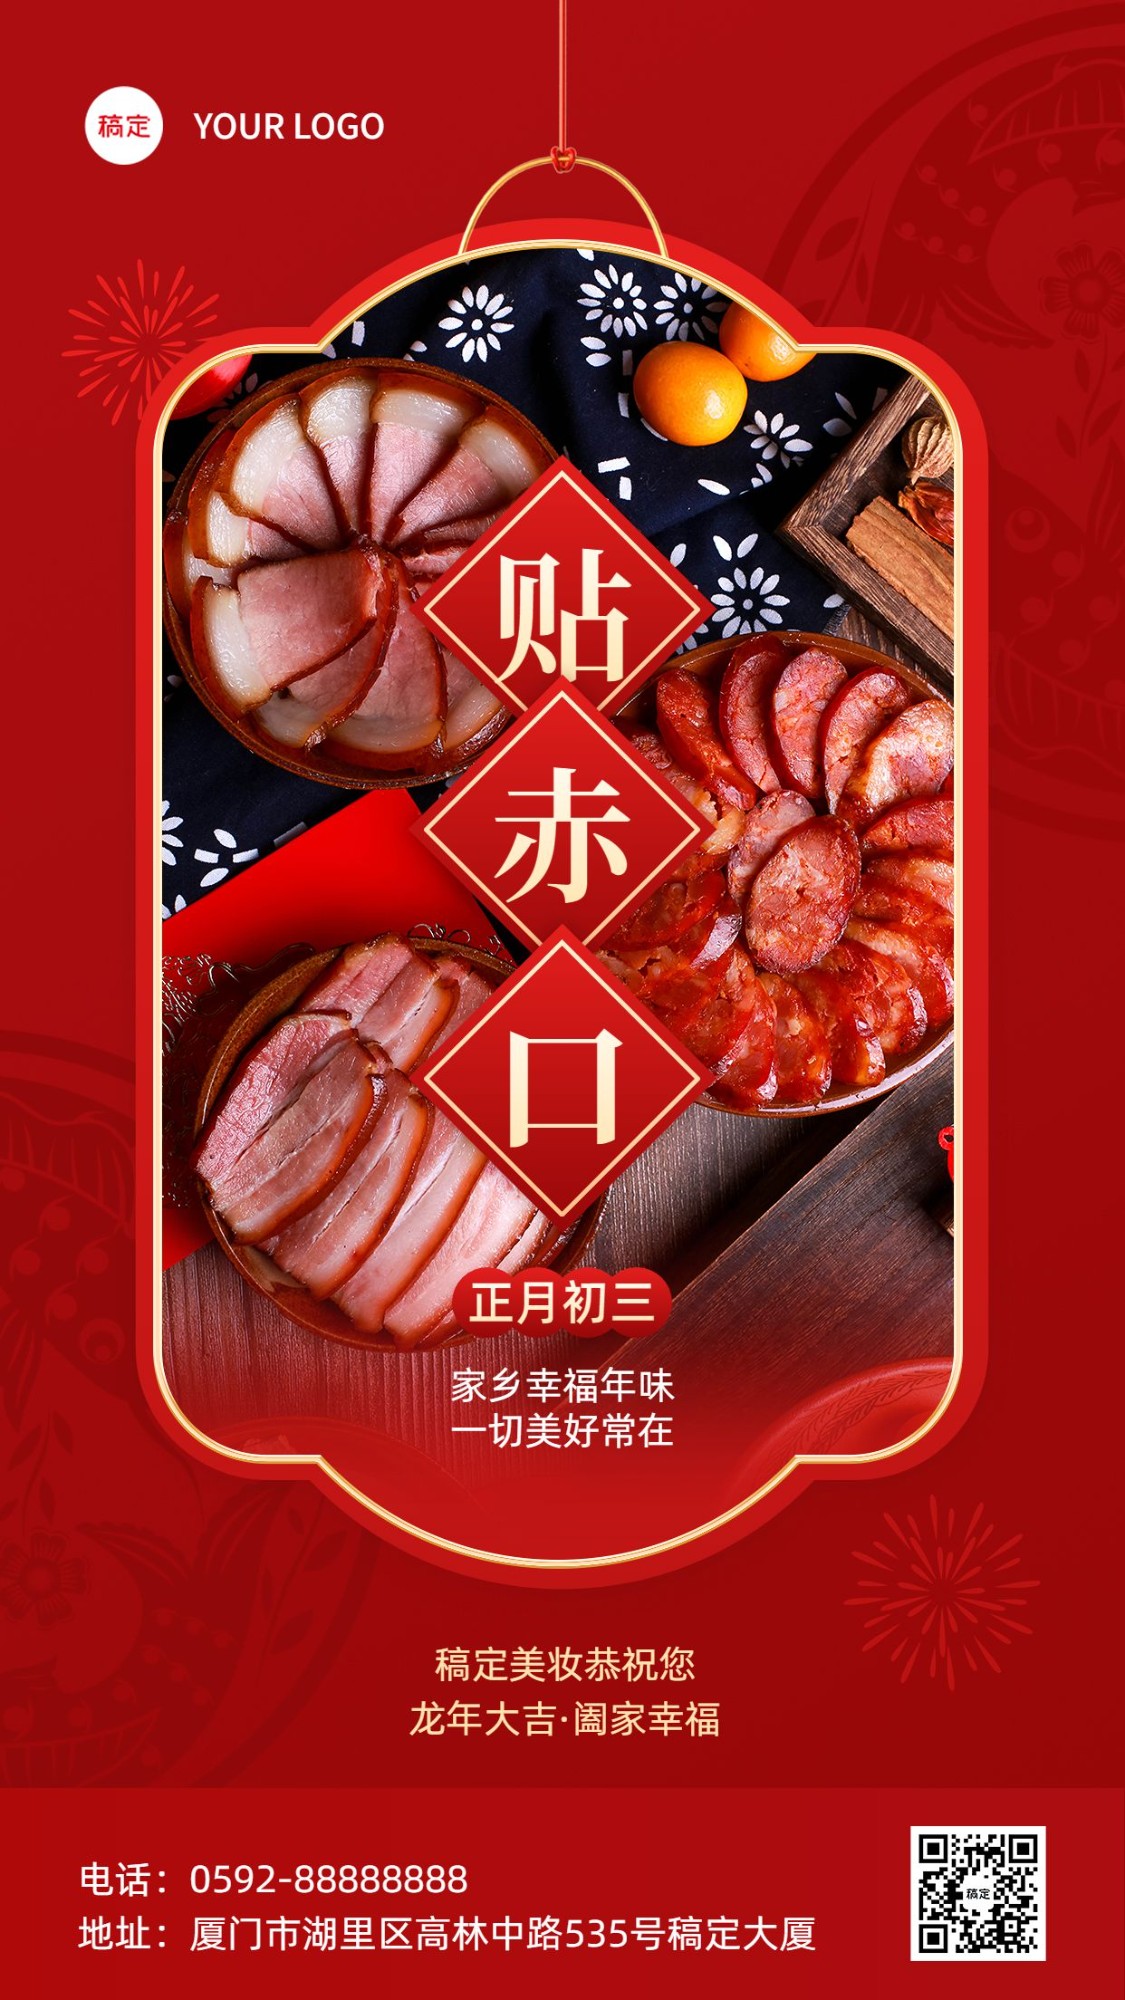 春节正月初三美容美妆节日祝福中式喜庆感套装竖版海报预览效果